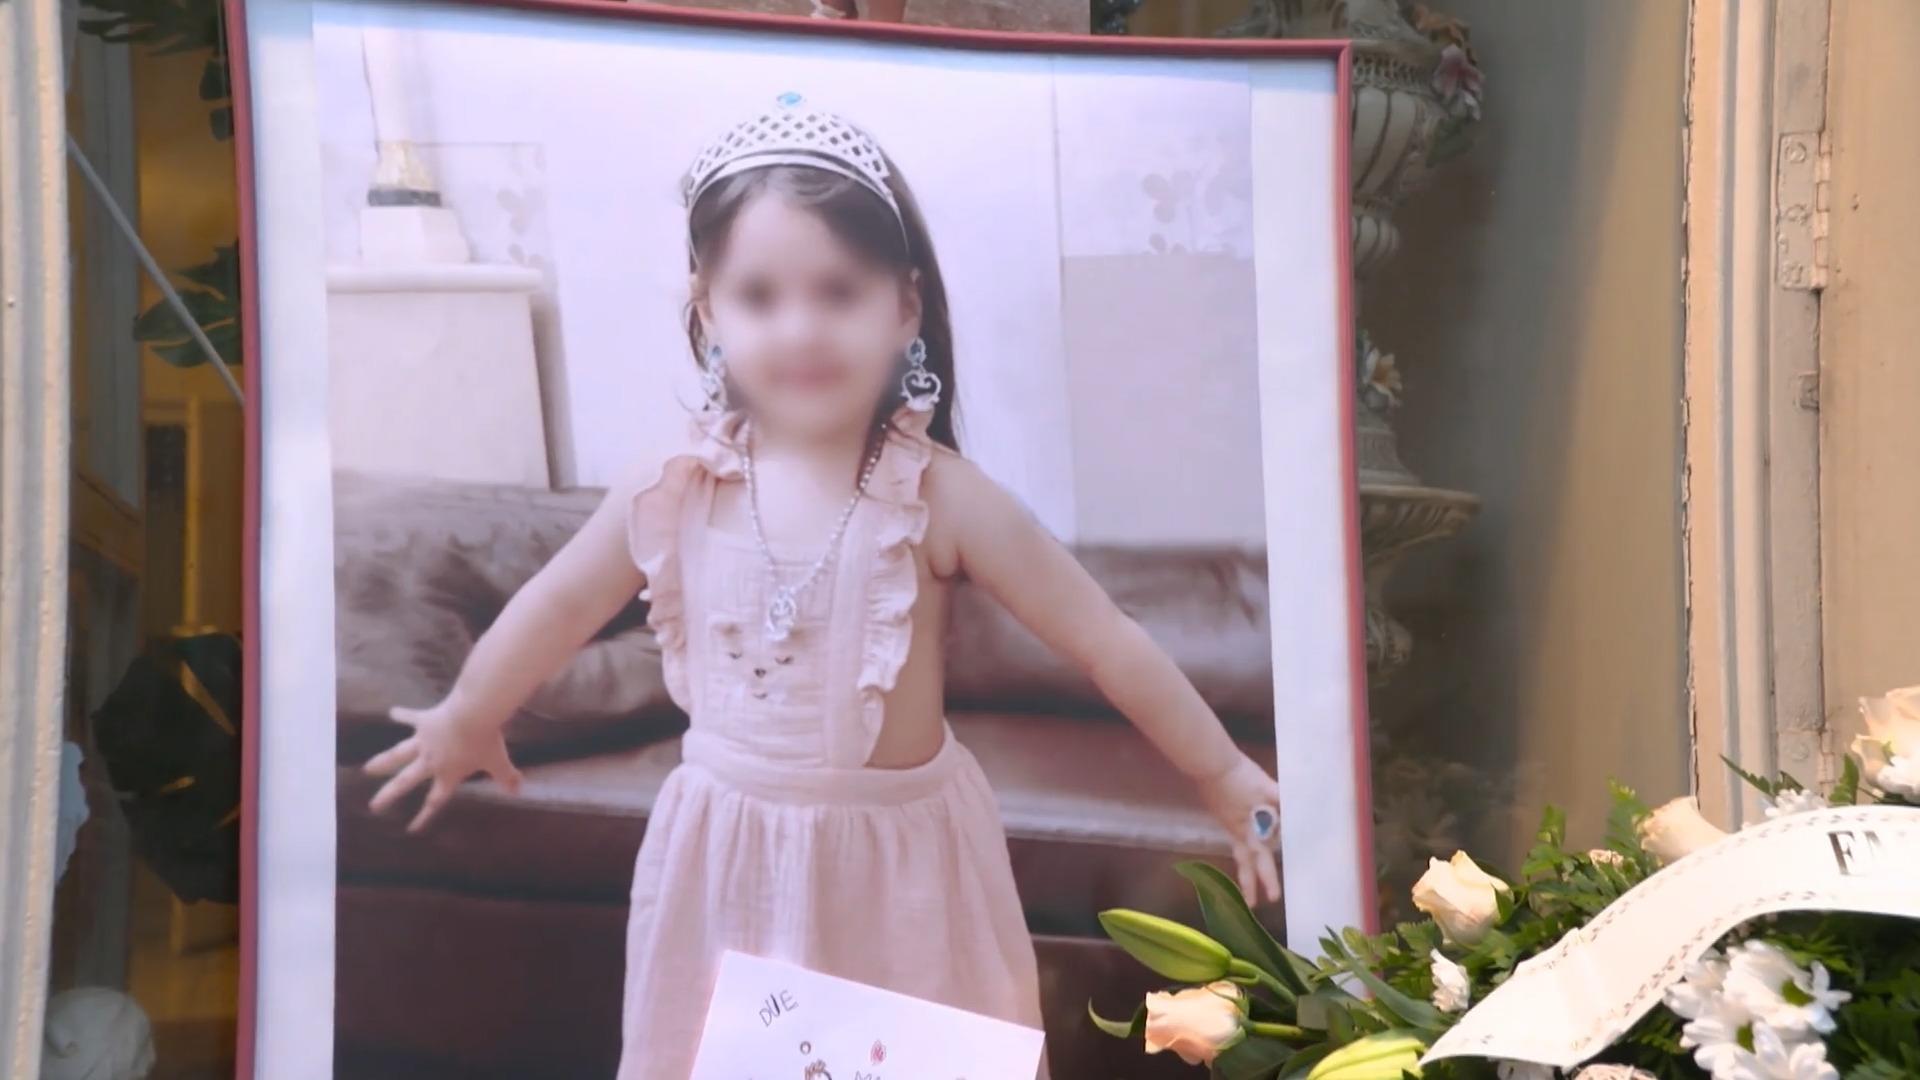 15-Jähriger tötet 5-jähriges Mädchen Grausiger Leichenfund im Müll